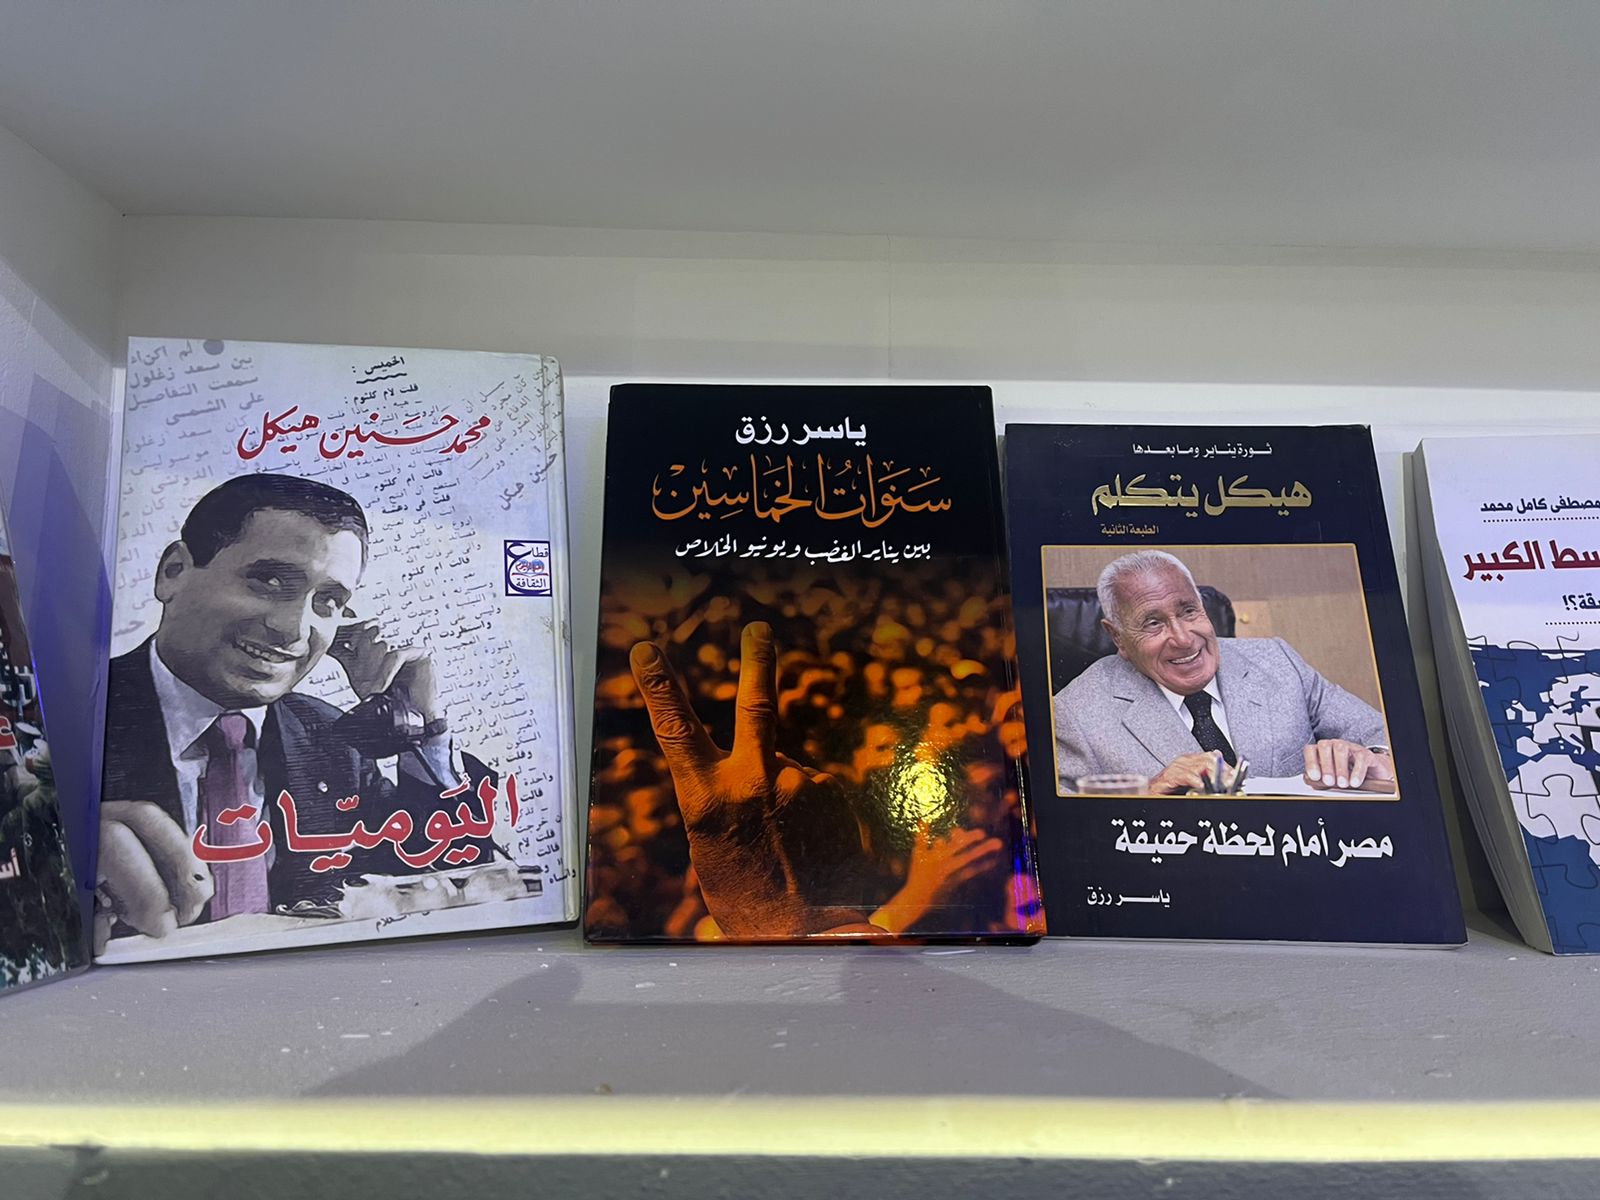 كتاب ياسر رزق فى معرض الكتاب (2)